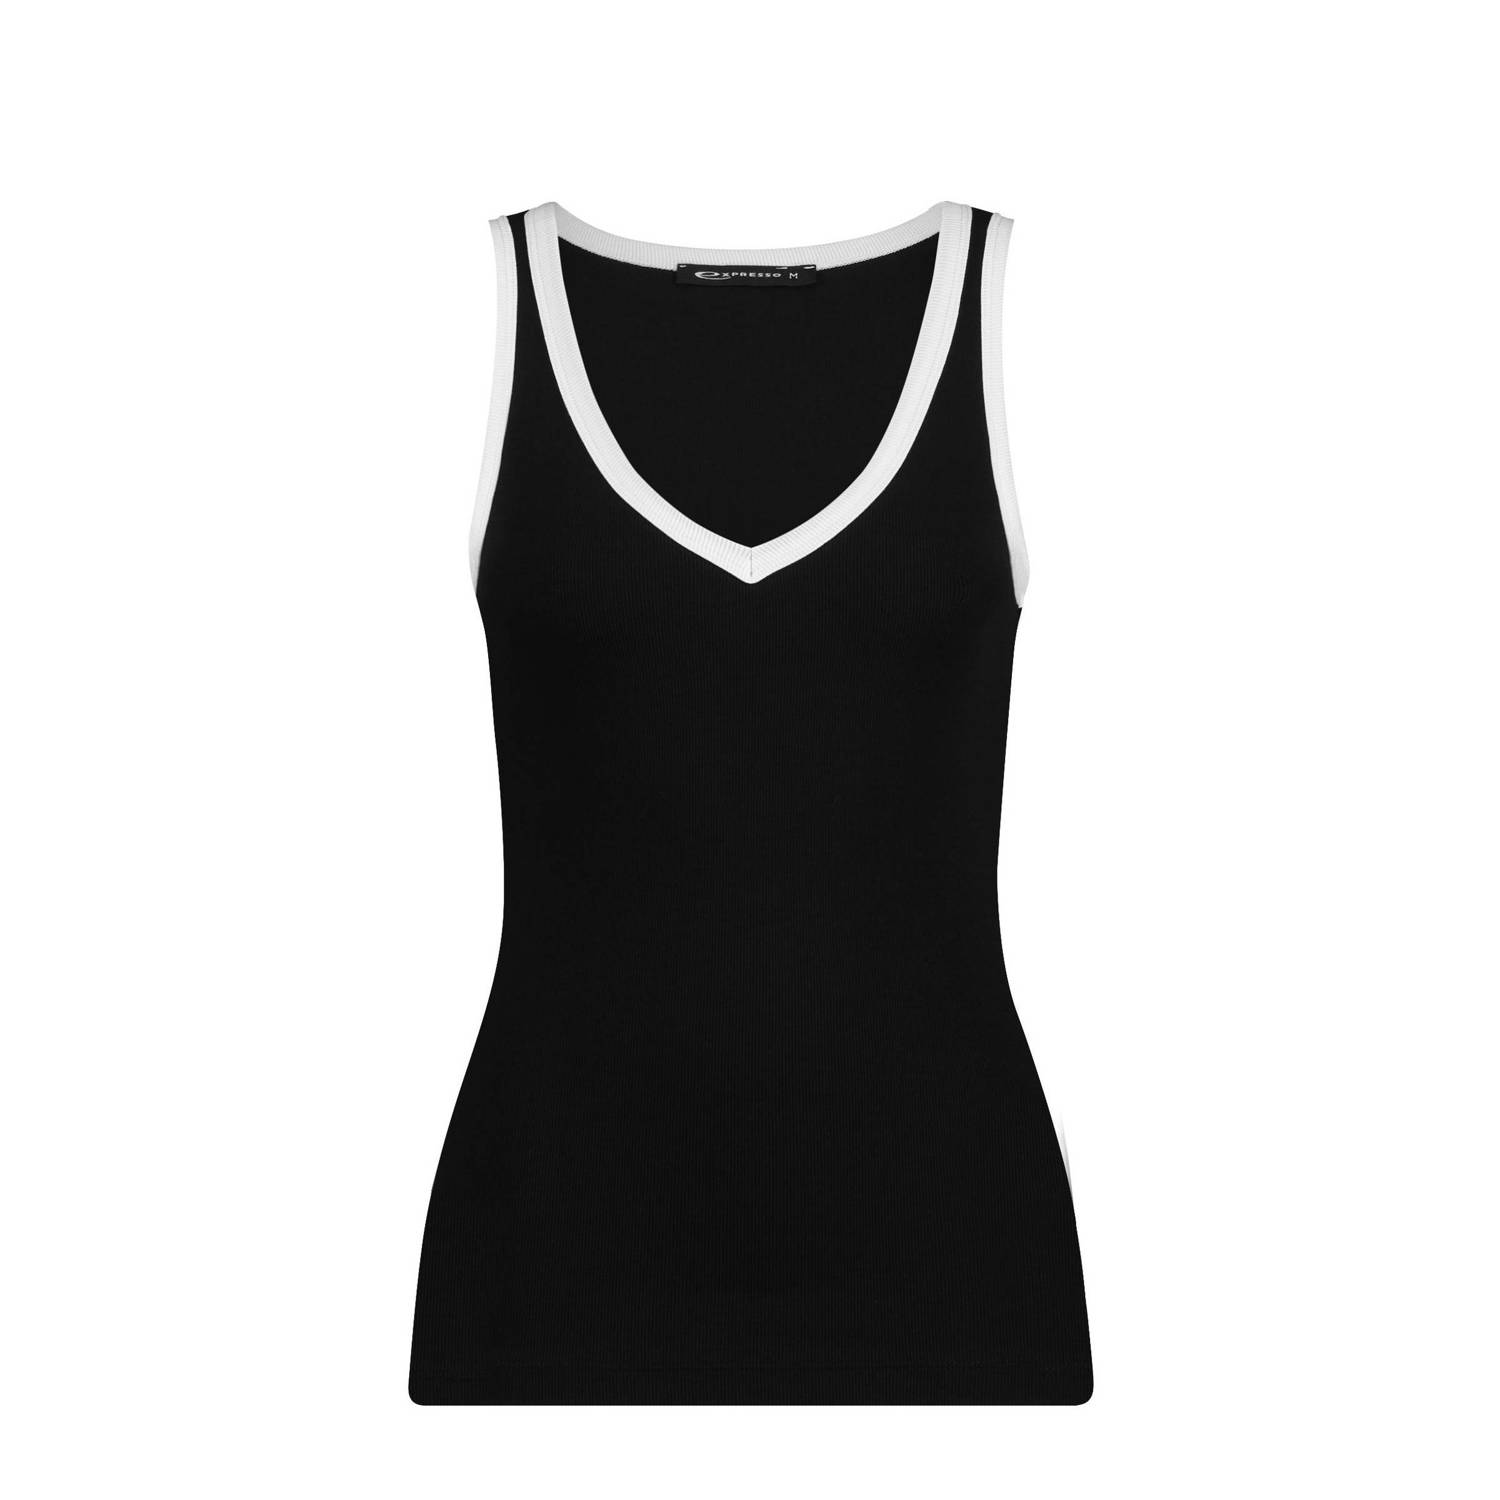 Expresso ribgebreide top met contrastbies zwart wit